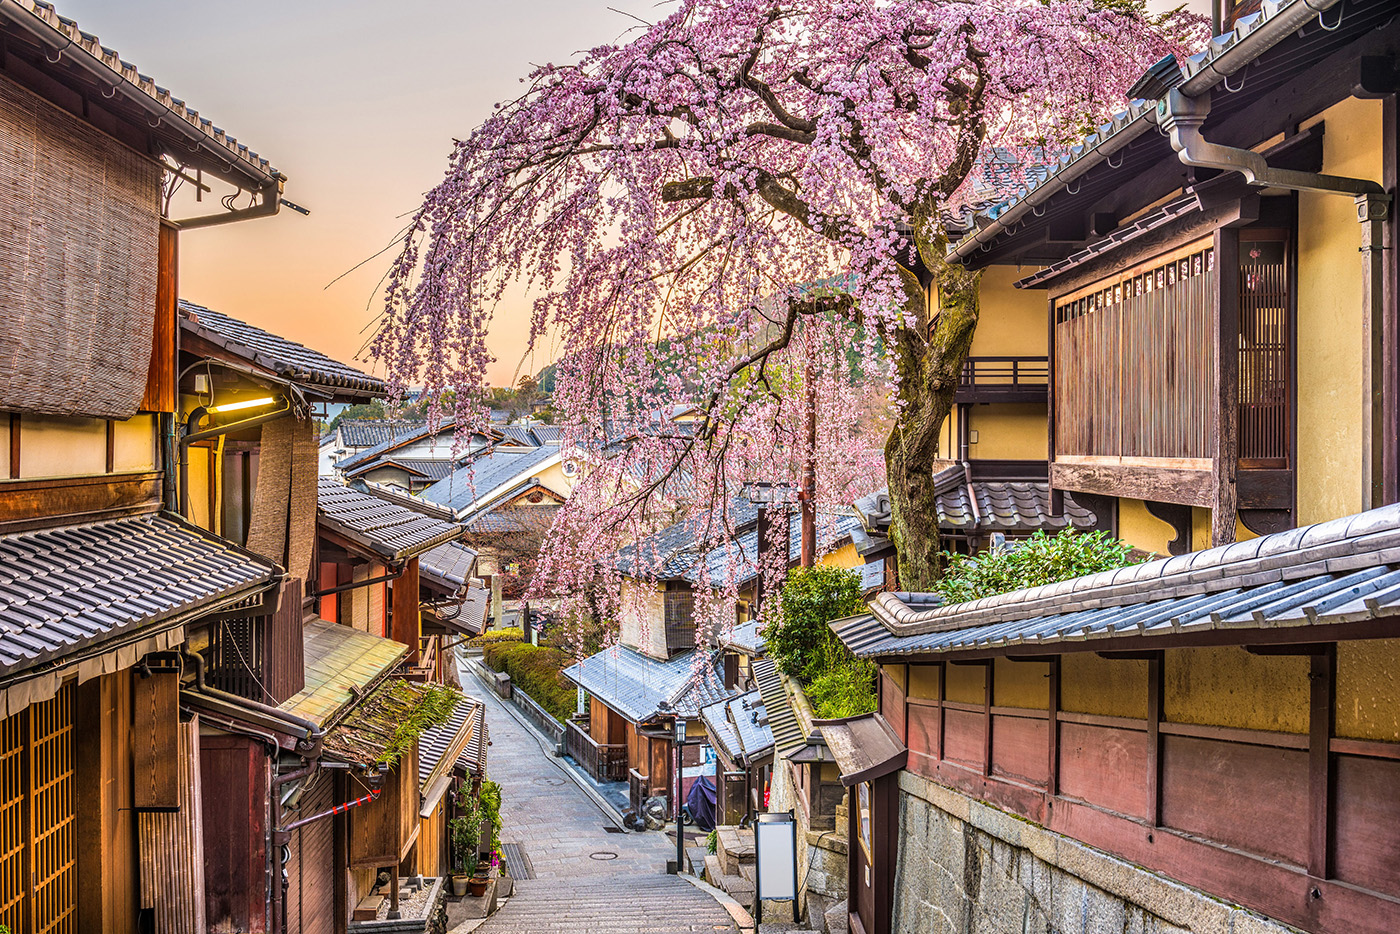 A Kyoto si possono ammirare i ciliegi in fiore tra templi, magnifici giardini e maestosi palazzi imperiali